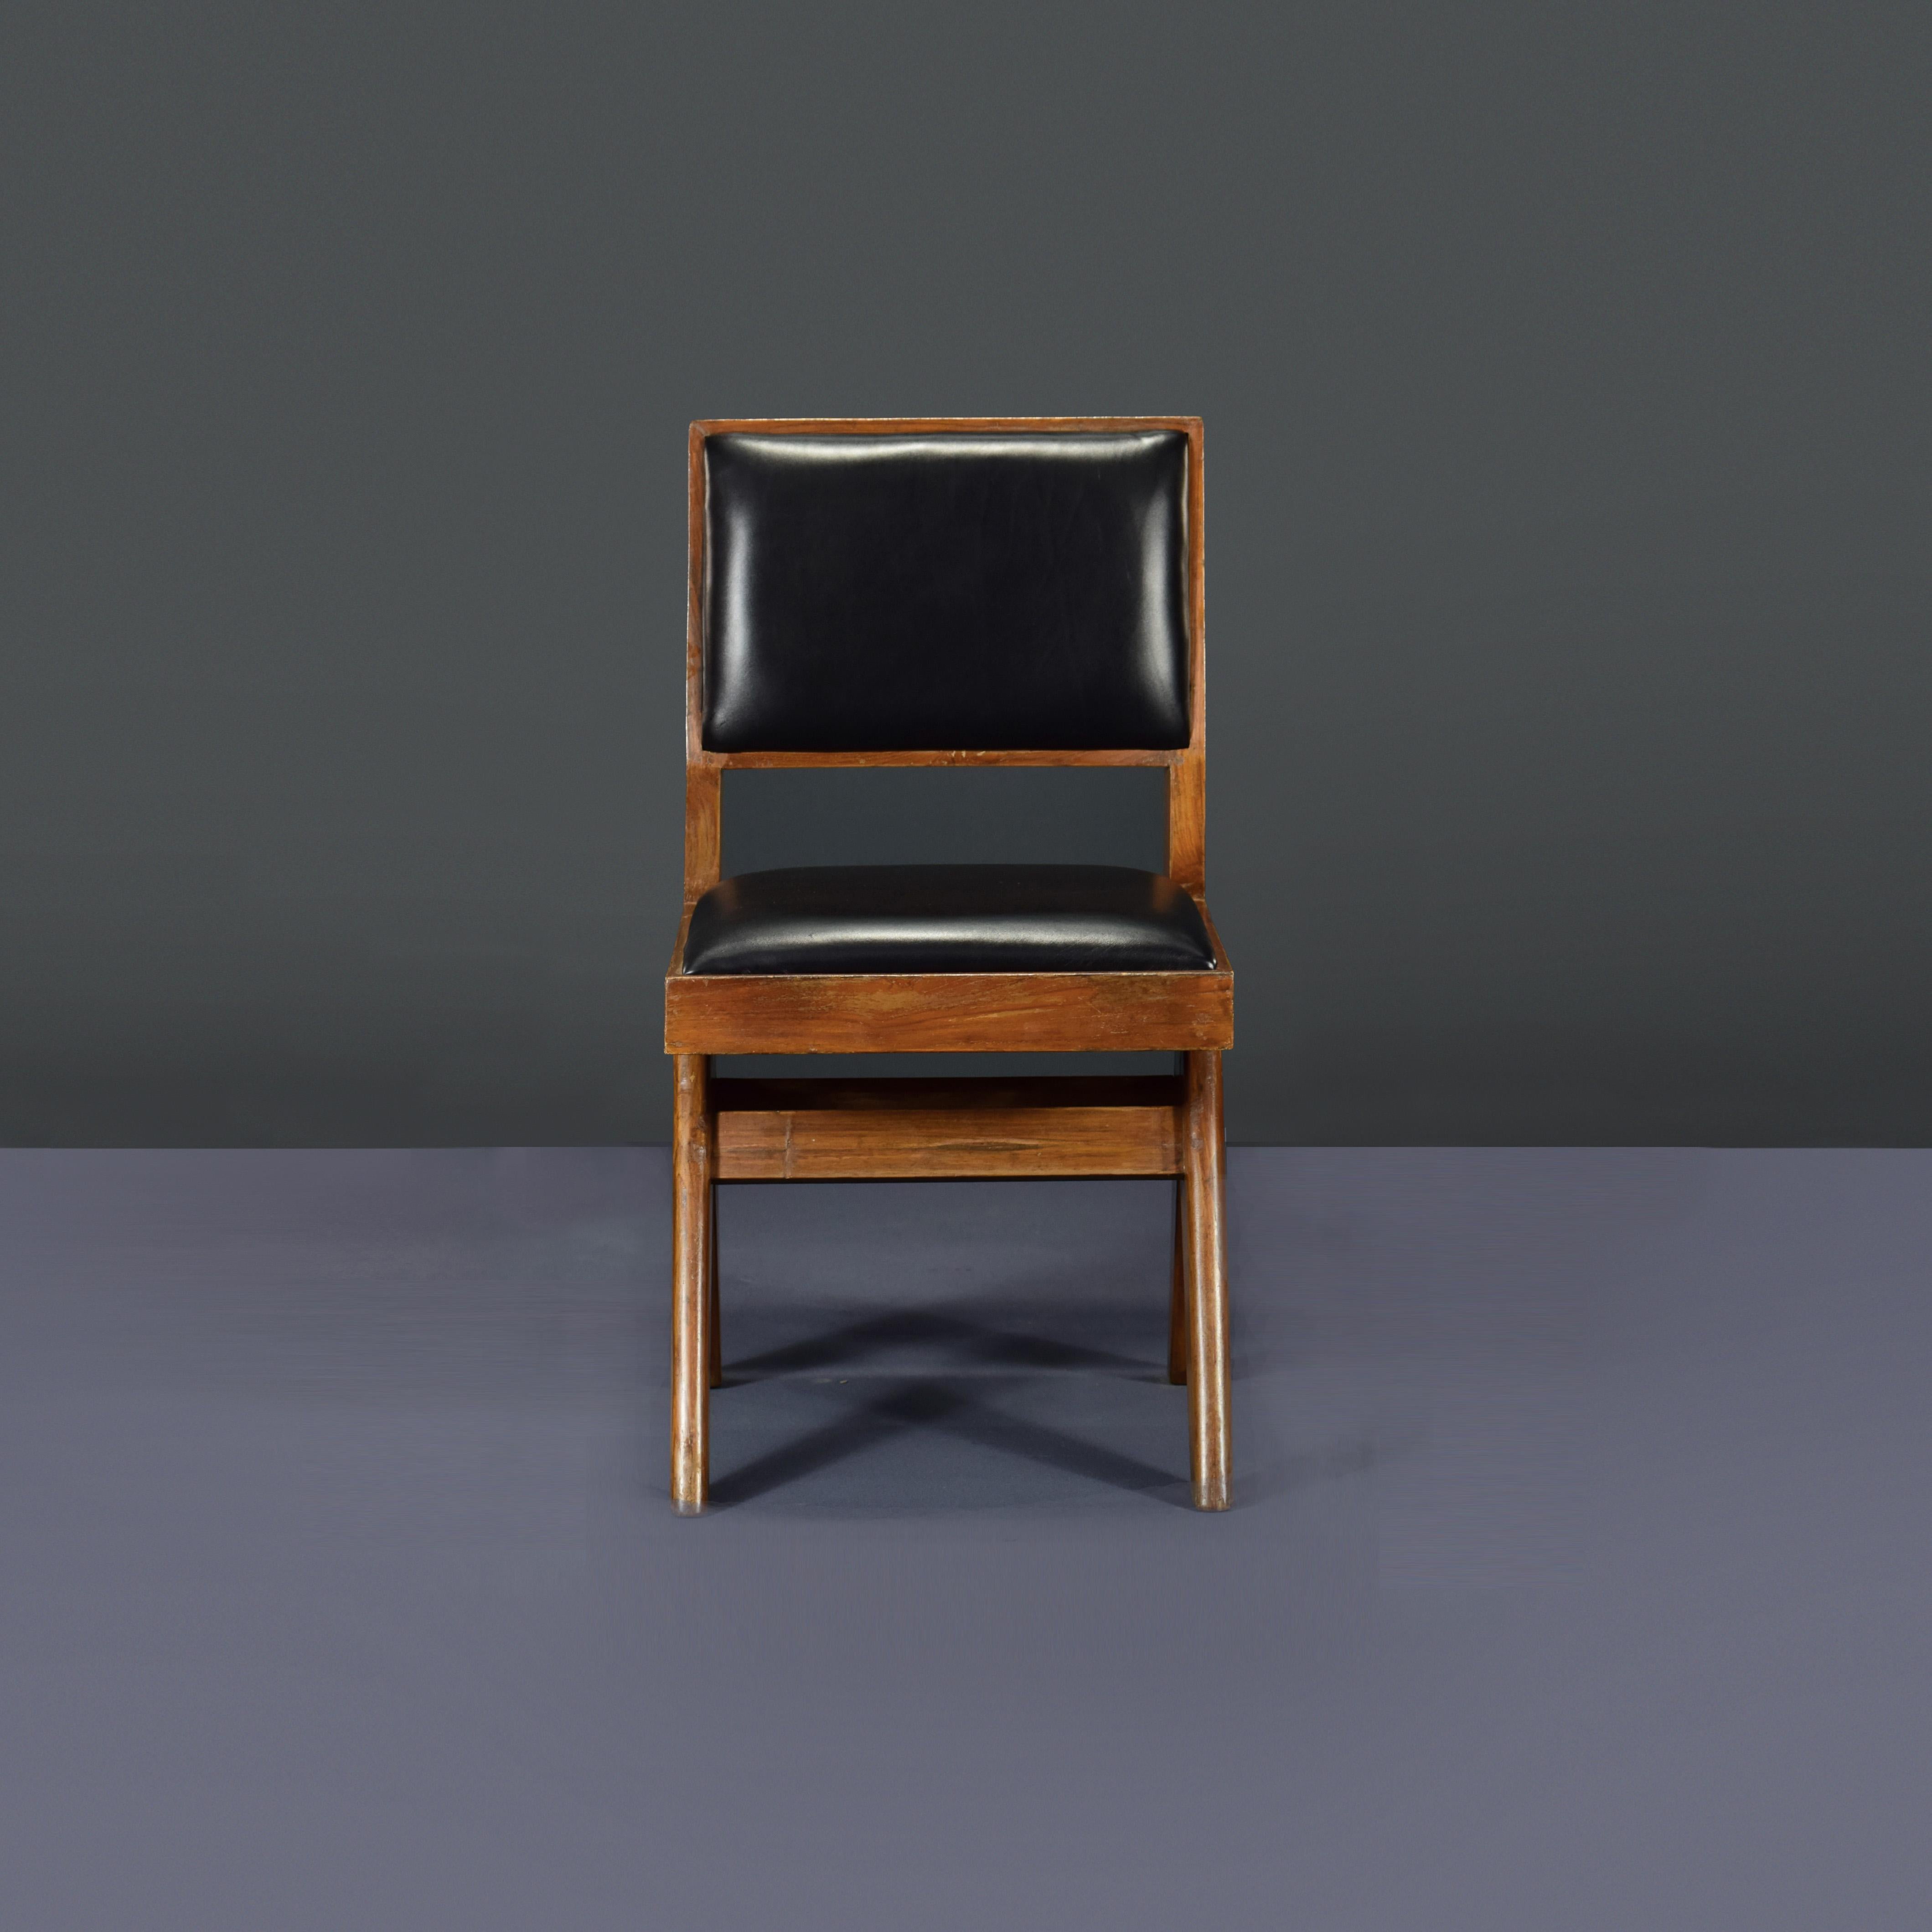 Dieser Stuhl ist ein sehr seltener Studentenstuhl mit Polsterung. Endlich ist es eine Ikone. Es wirkt so einfach und doch so präzise, die Proportionen scheinen perfekt zu sein. Diese A-förmigen Beine sind typisch für Chandigarh-Objekte. Dann dieser